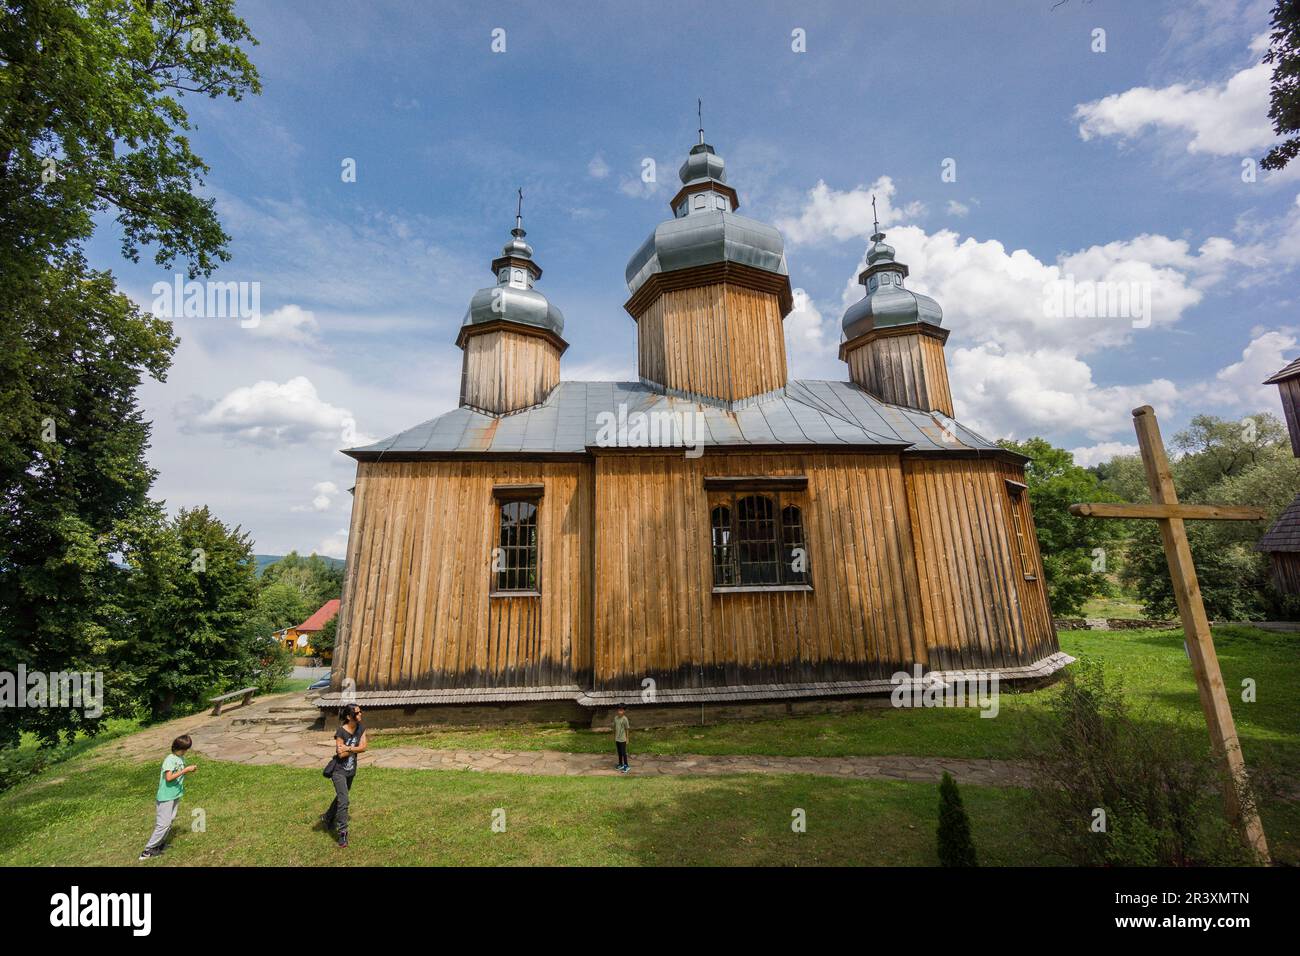 Iglesia Ortodoxa de Dobra Szlachecka, siglo 17, valle del rio San , voivodato de la Pequeña Polonia, Cárpatos, Polonia, europe. Stock Photo